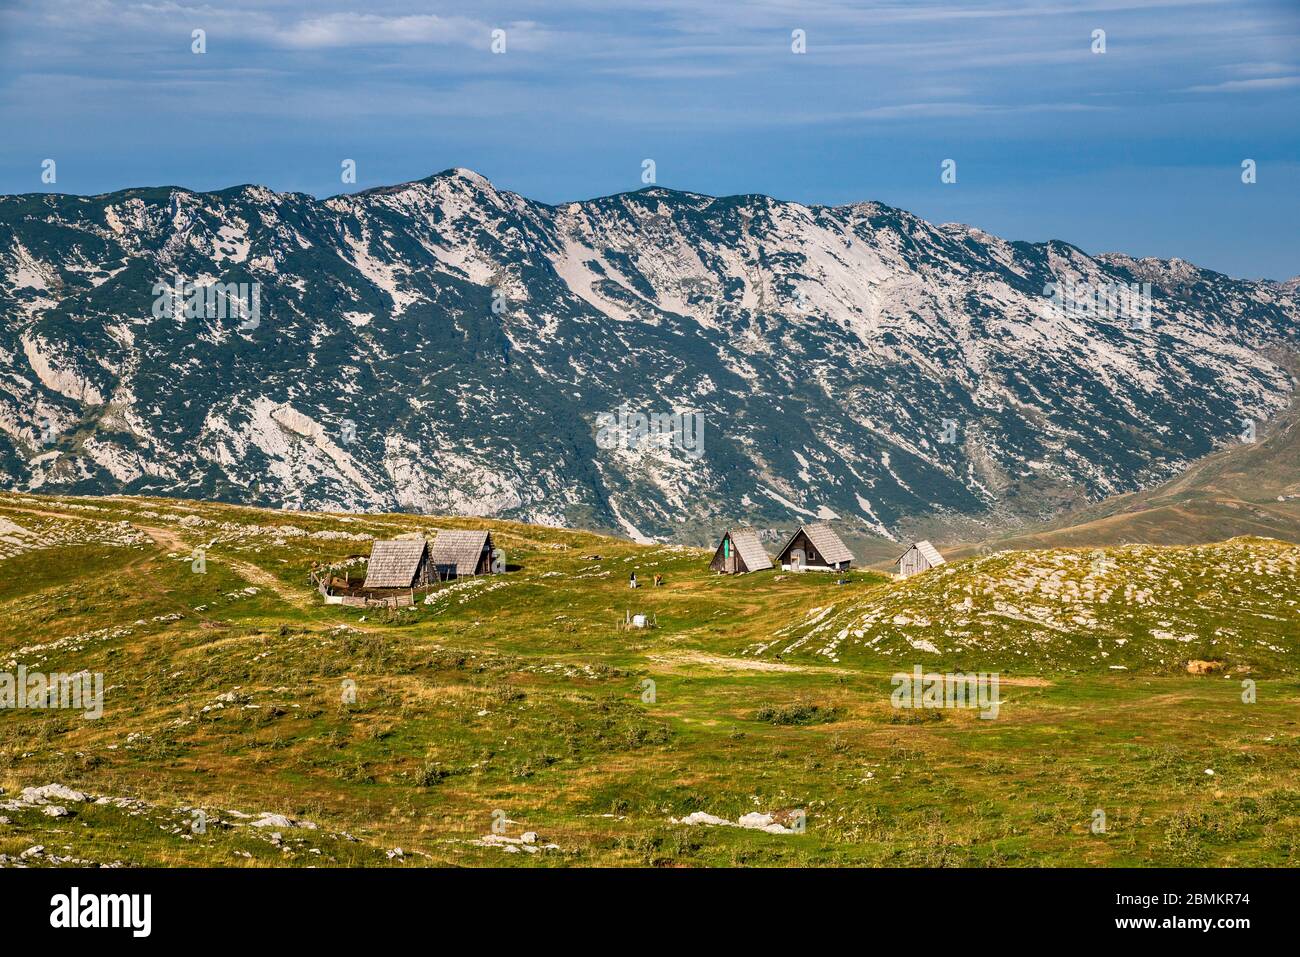 Massif de Sedlena Greda, Parc national de Durmitor, site classé au patrimoine mondial de l'UNESCO, Alpes Dinariques, Monténégro, Europe du Sud-est Banque D'Images